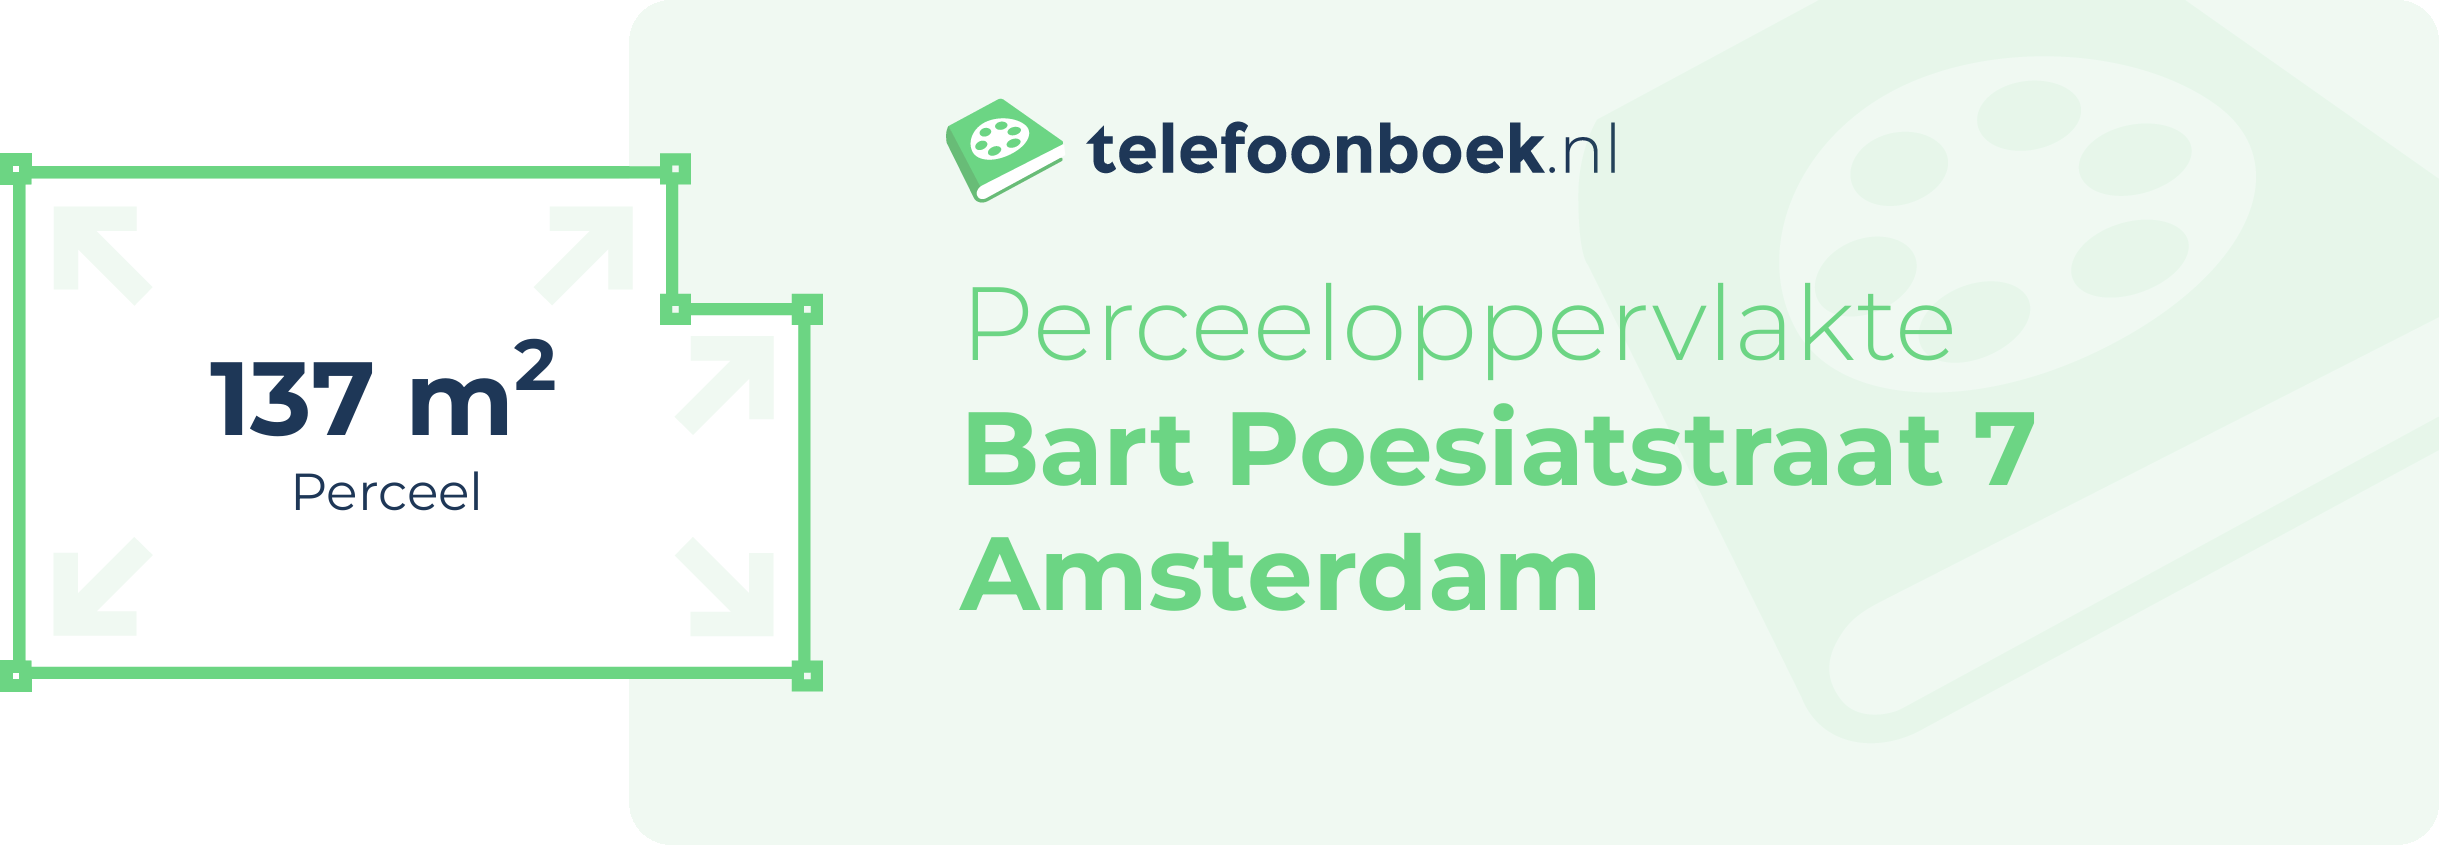 Perceeloppervlakte Bart Poesiatstraat 7 Amsterdam